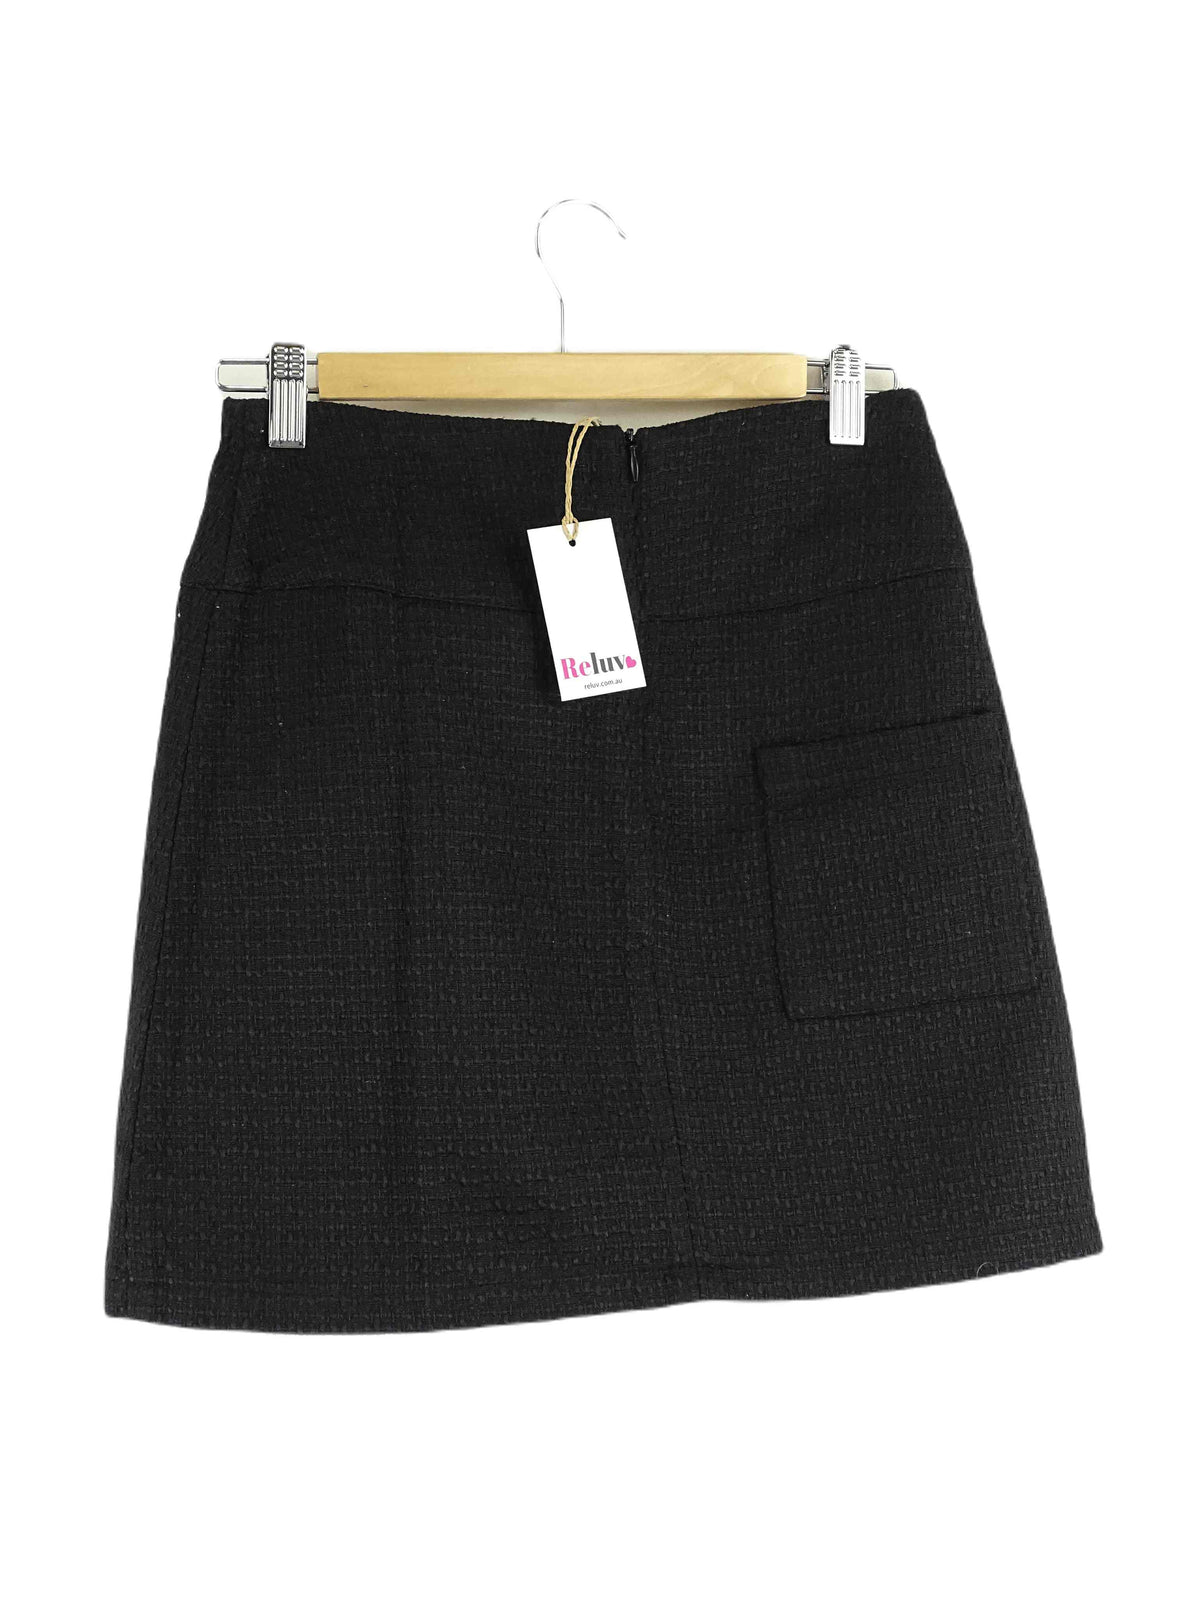 Belle &amp; Bloom Black Woven Skirt S